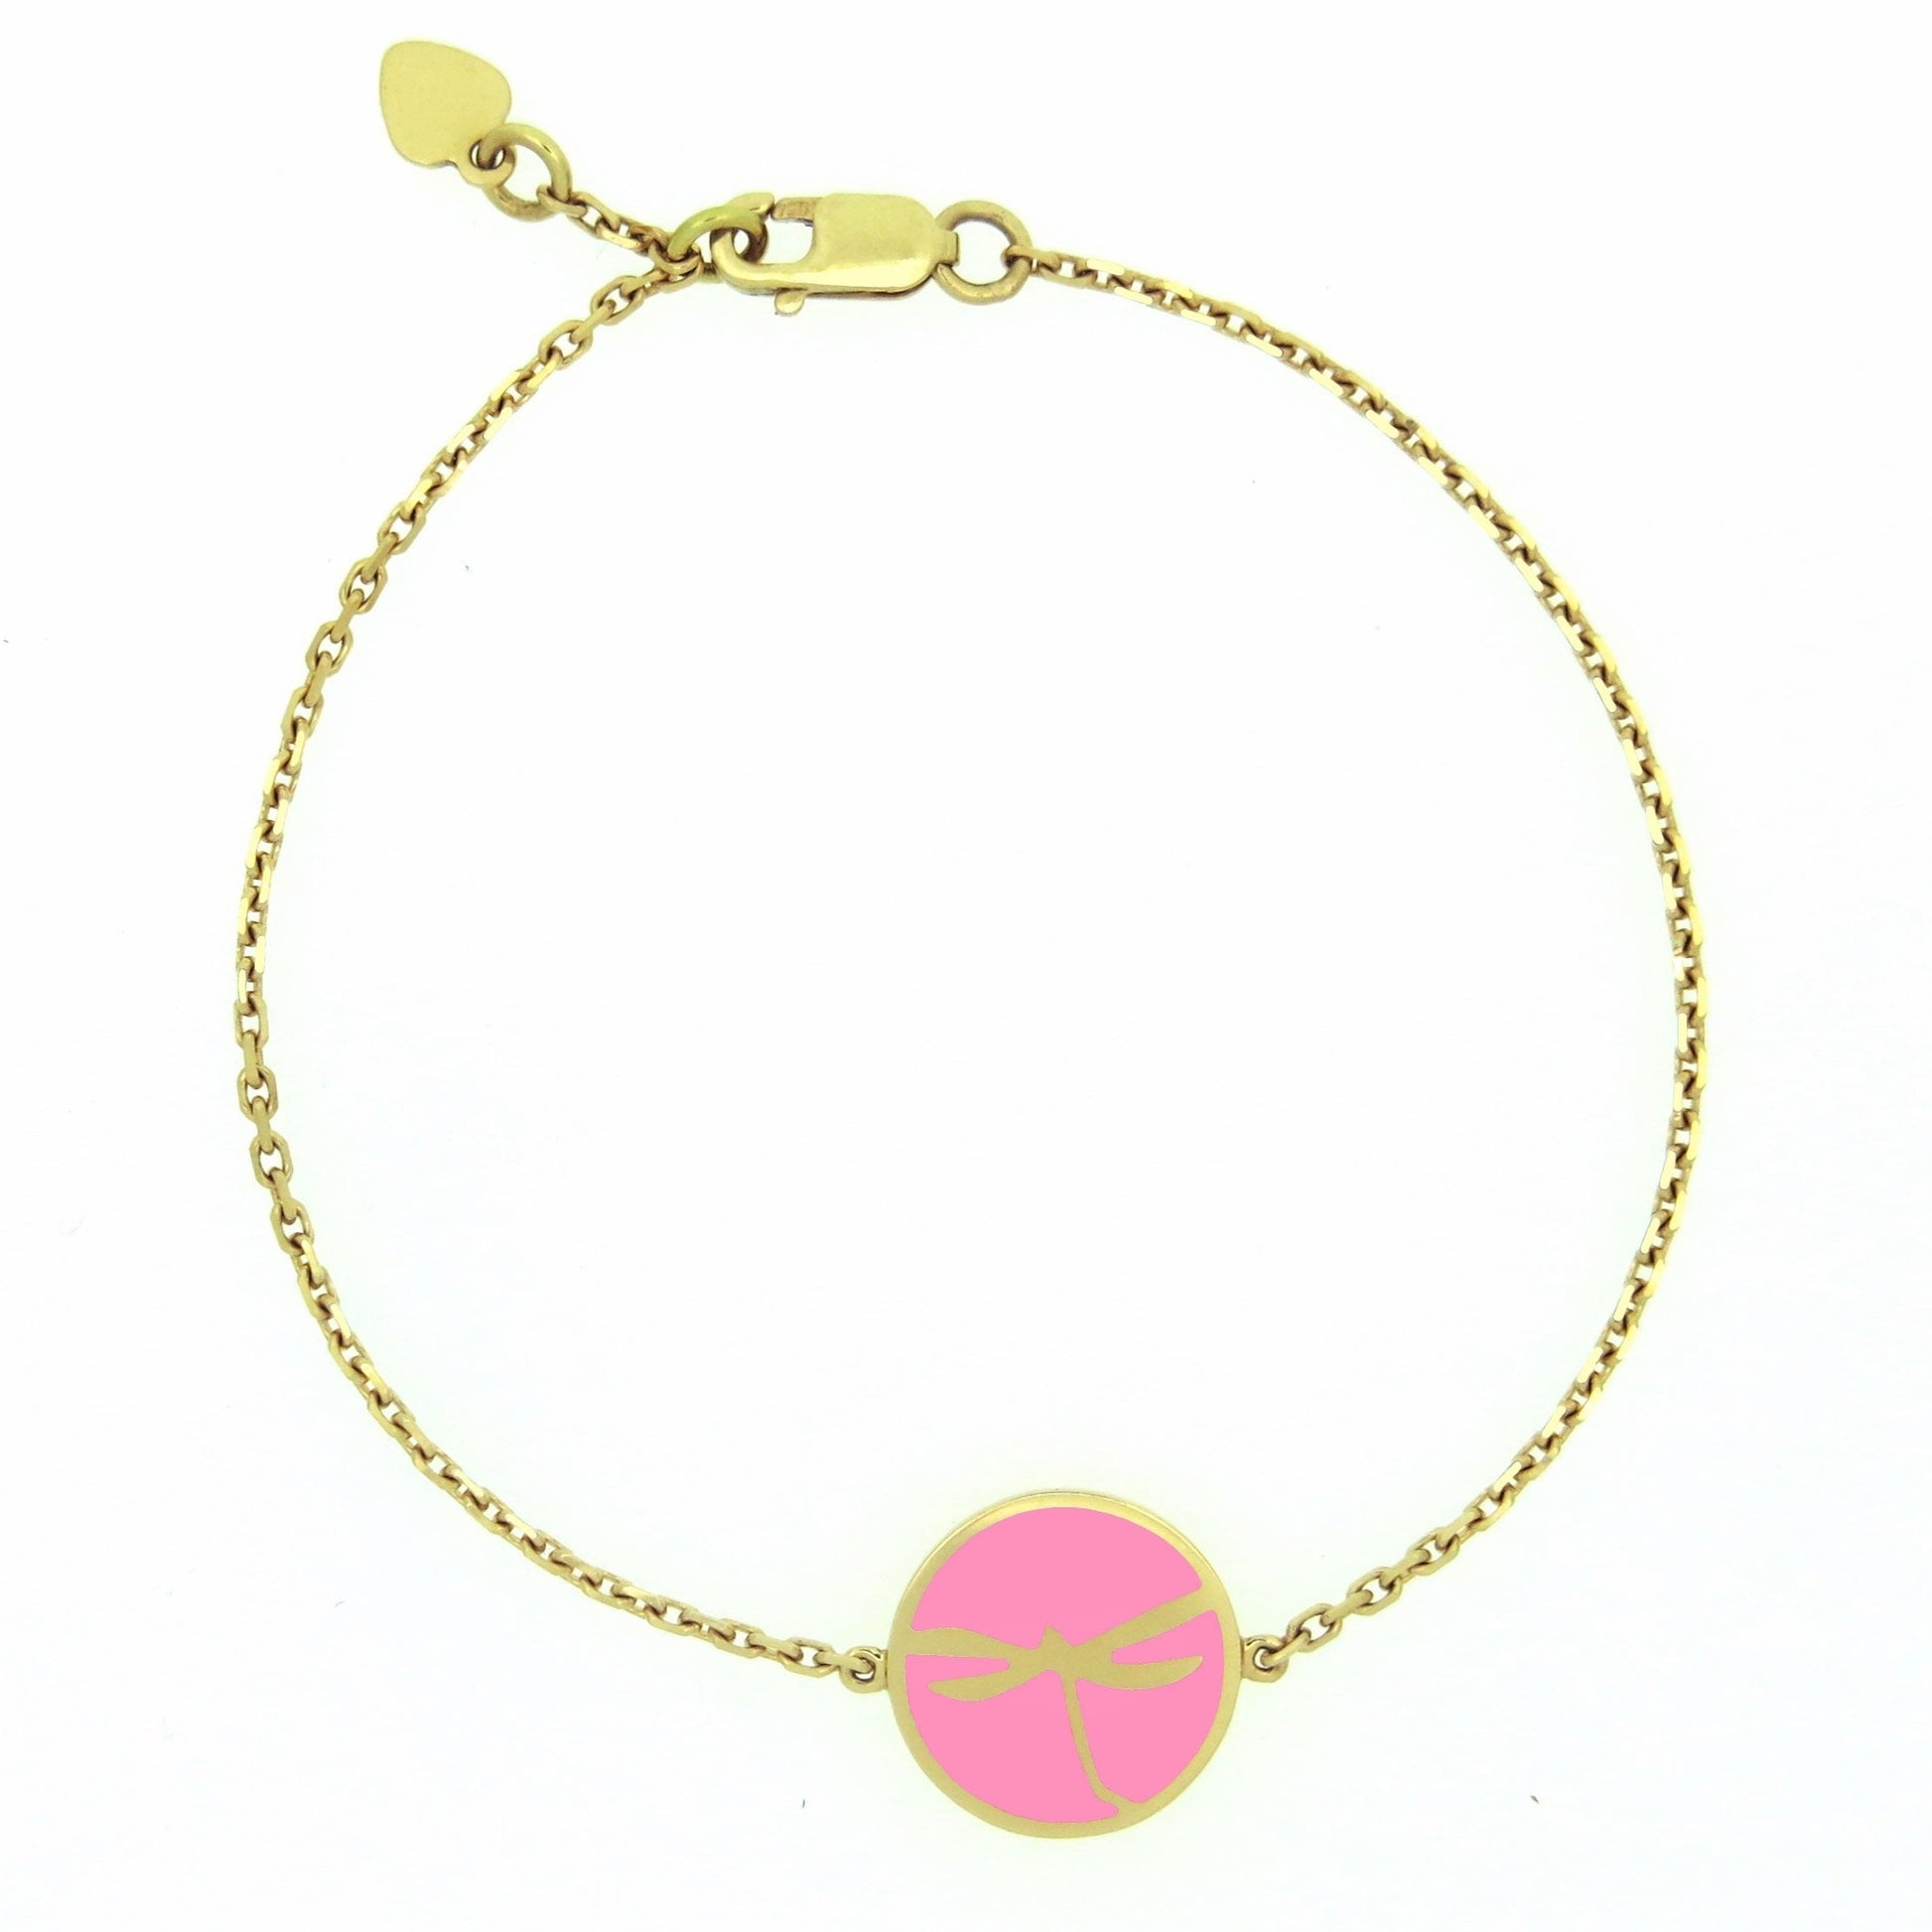  MORA bijoux, bracelet avec médaillon représentant une libellule en or jaune 18 carats dans un médaillon rond émaillé rose monté sur chaîne forçat